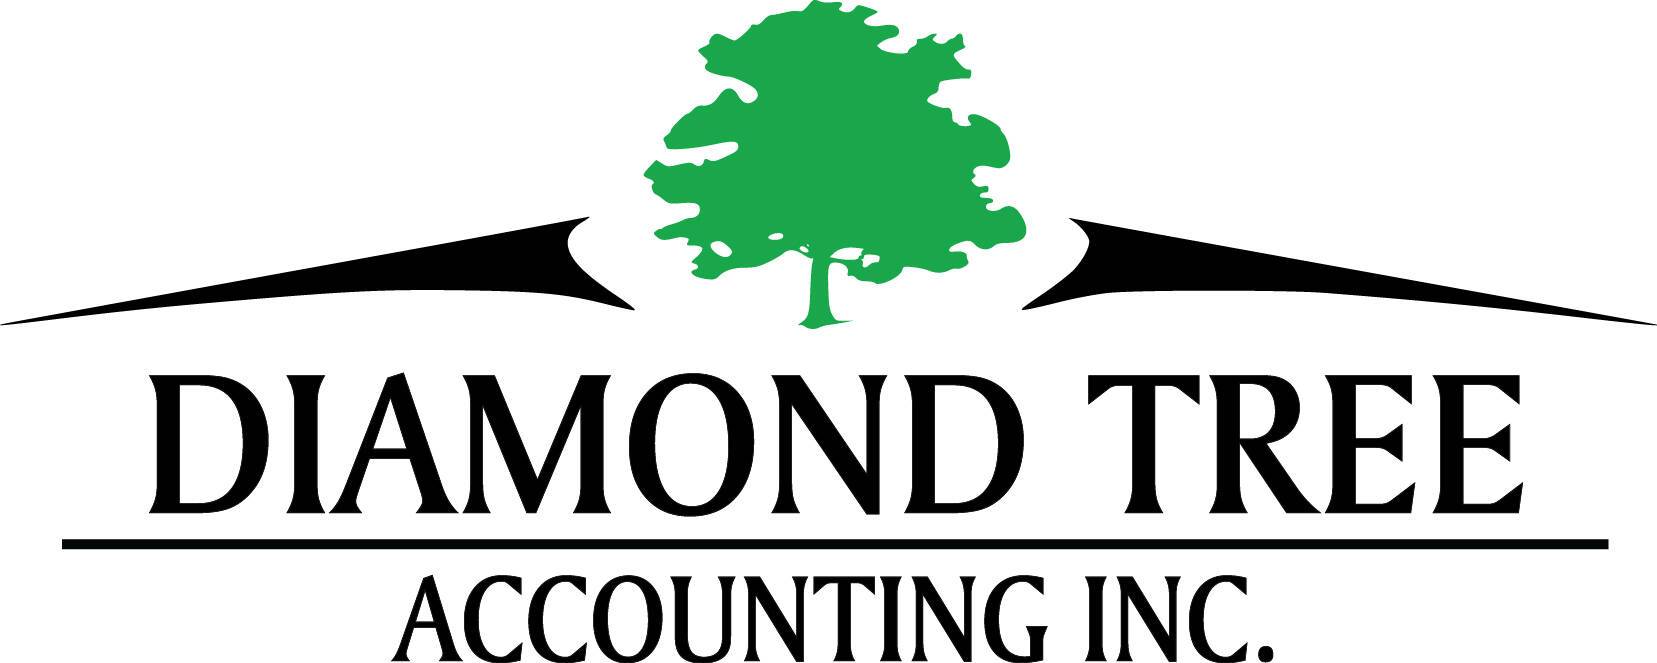 Diamond Tree Accounting